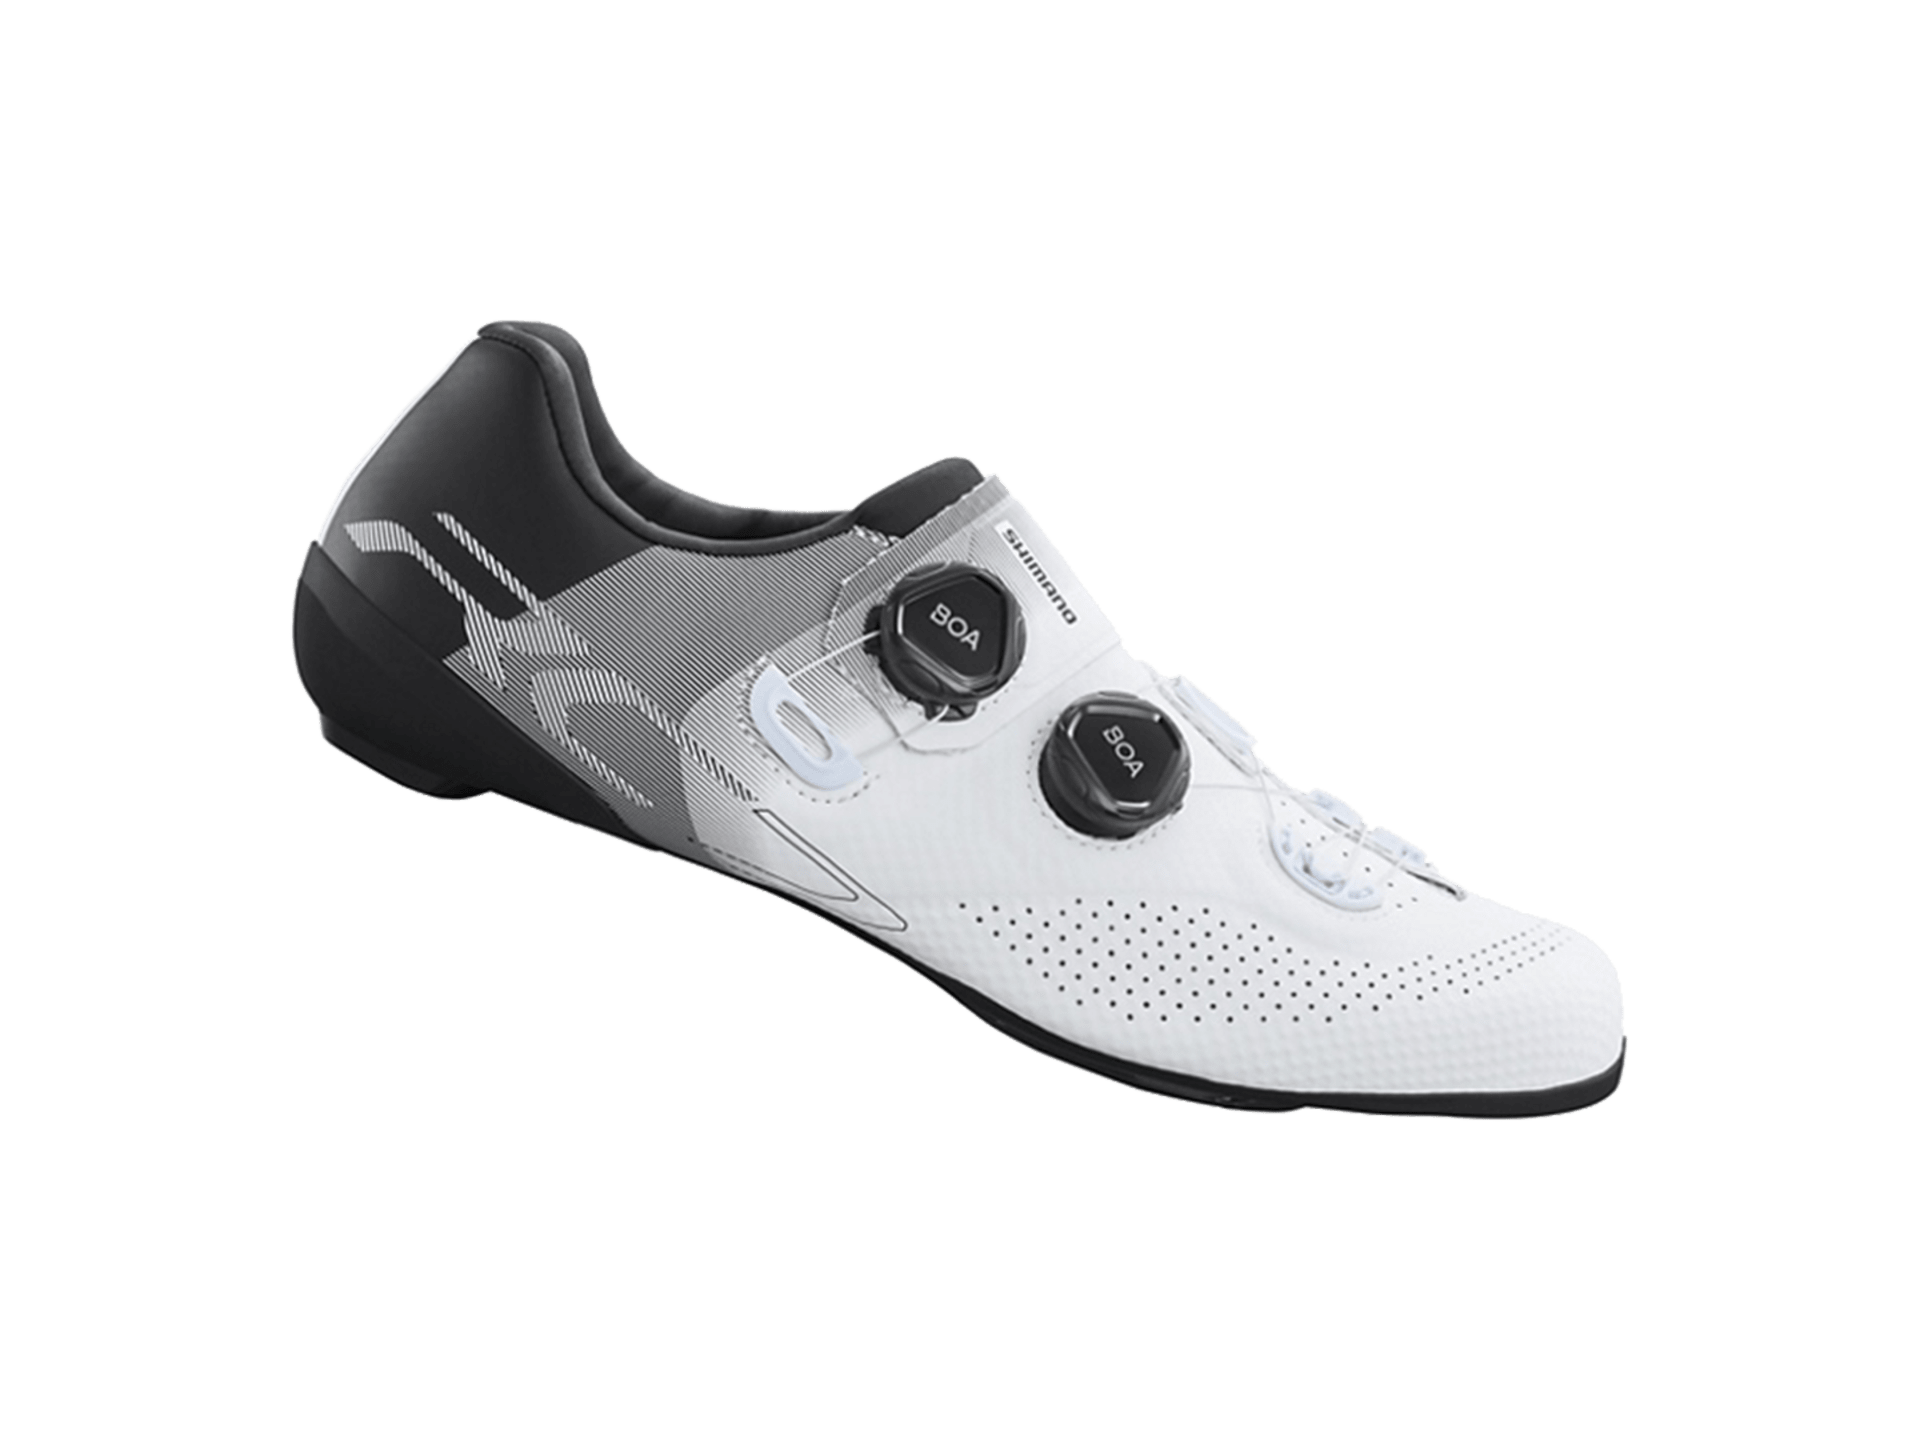 Shimano RC702 Men's Road Cycling Shoe